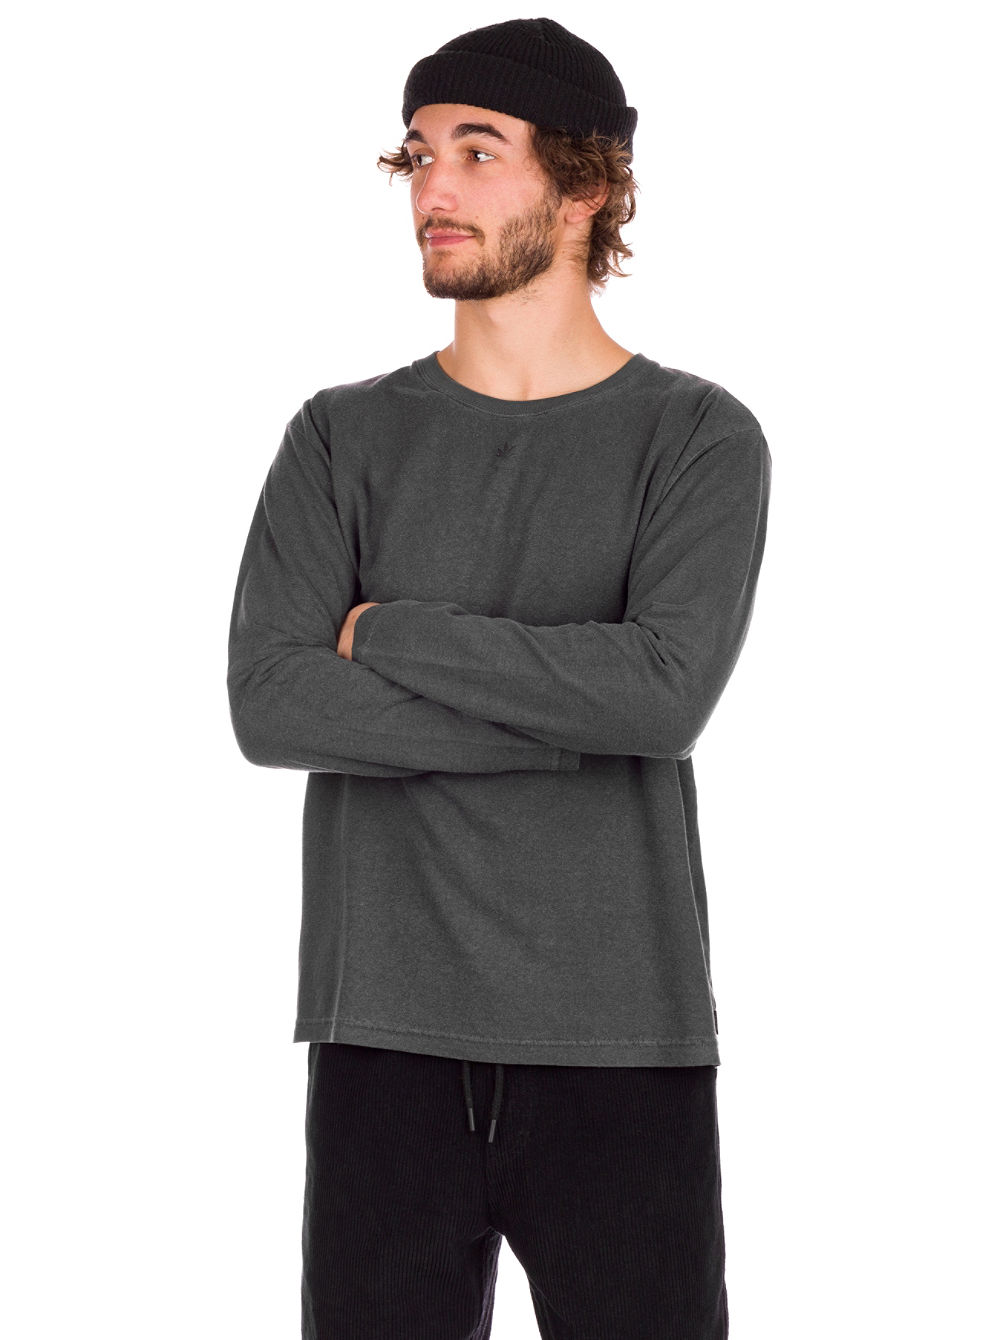 Saxe Hemp Standard Fit Long Sleeve T-Shirt